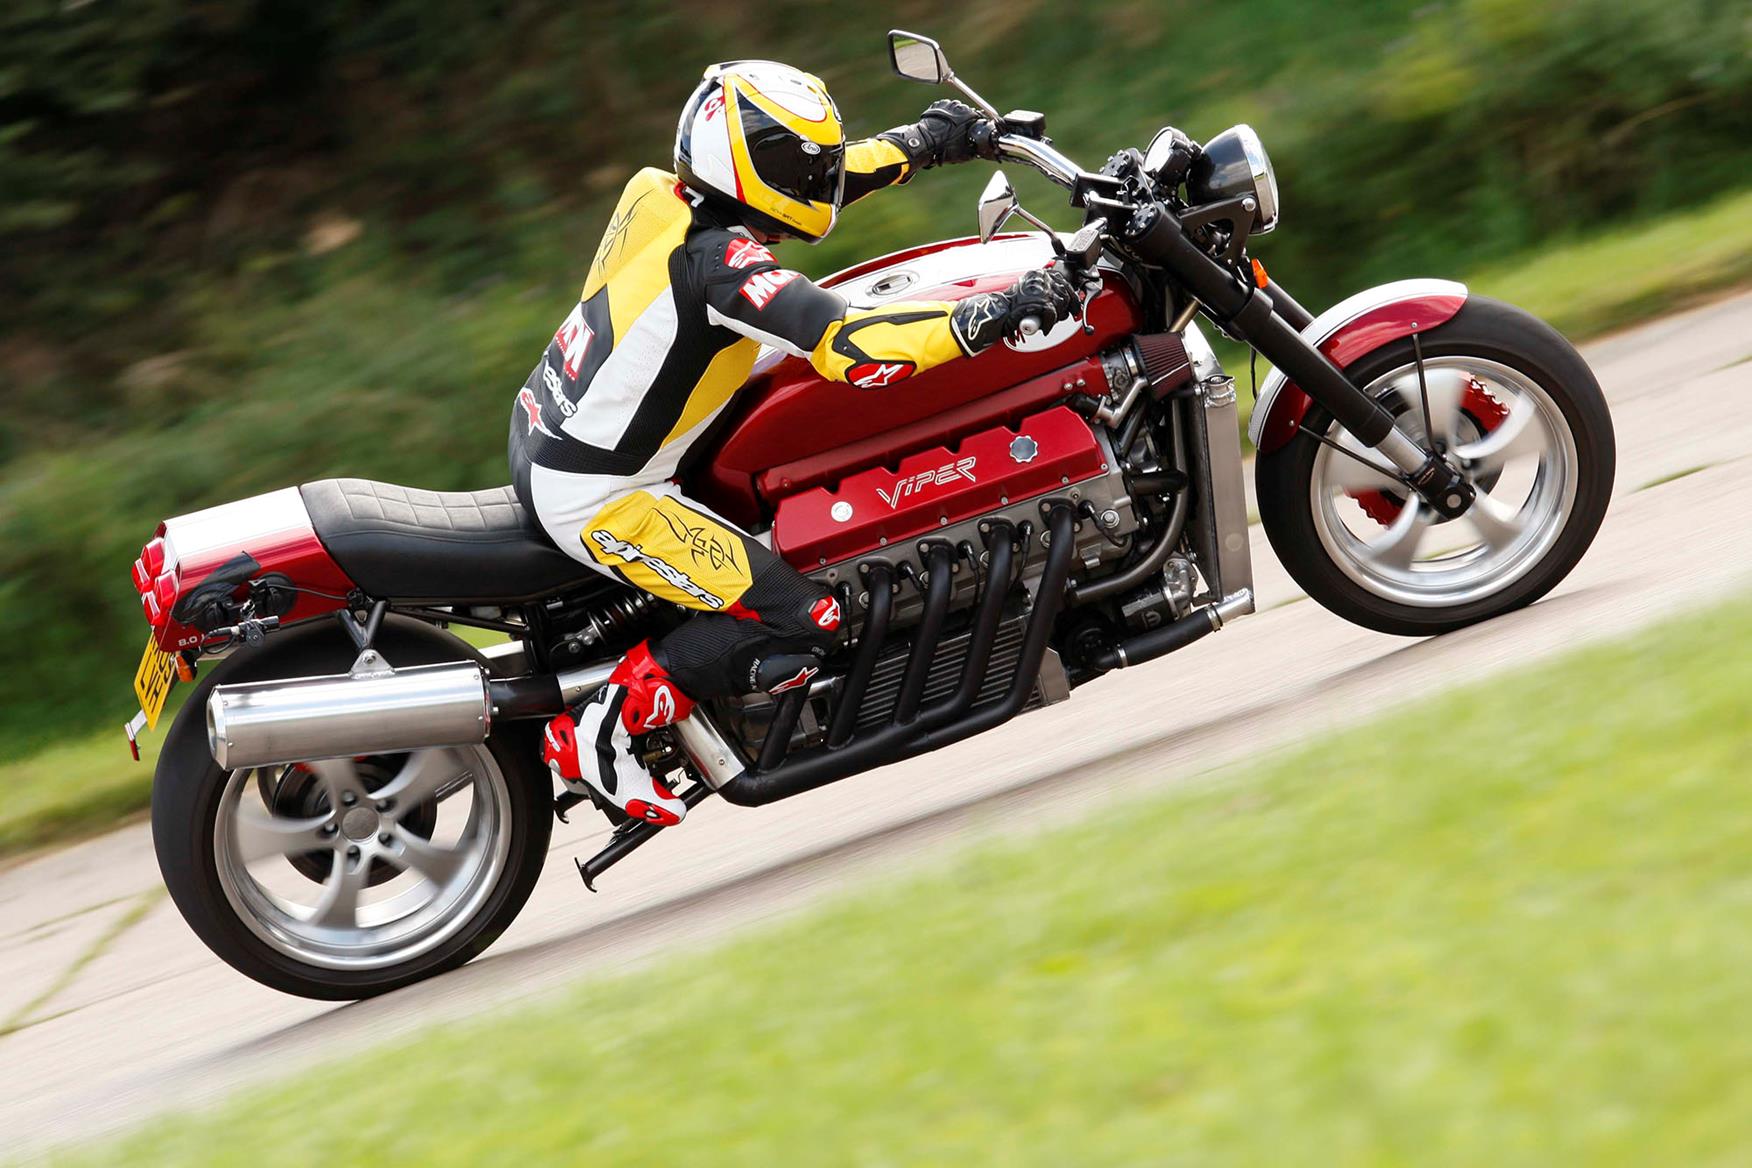 La Motocicleta Allen Millyard S V10 Viper Llega A 207 Mph Online Digest